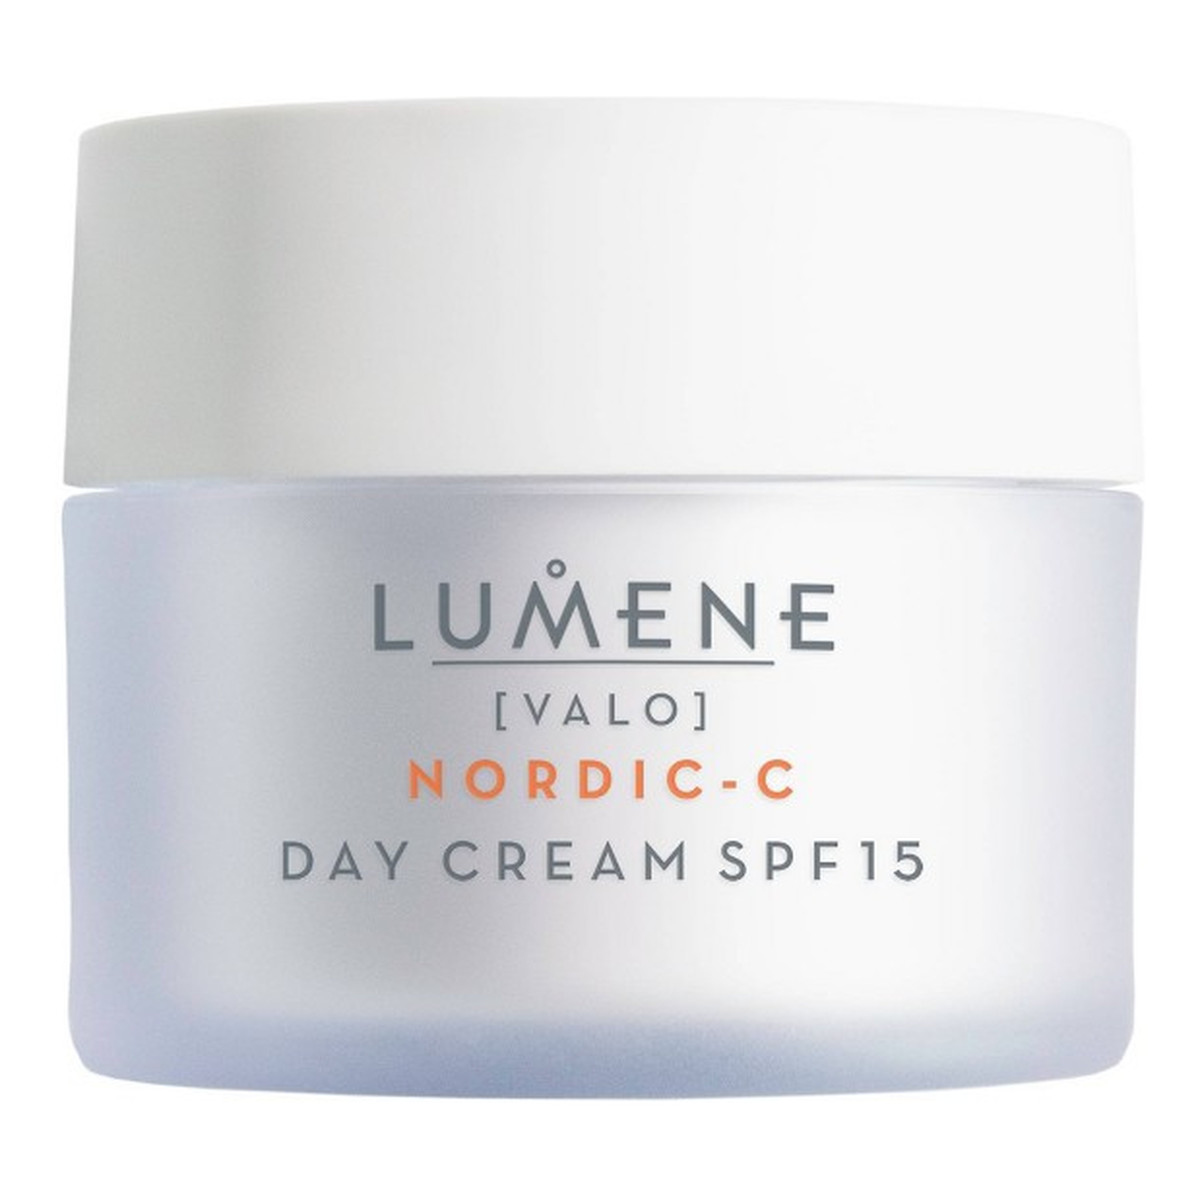 Lumene Nordic-C Valo Day Cream SPF15 Krem rozświetlający na dzień z witaminą C 50ml